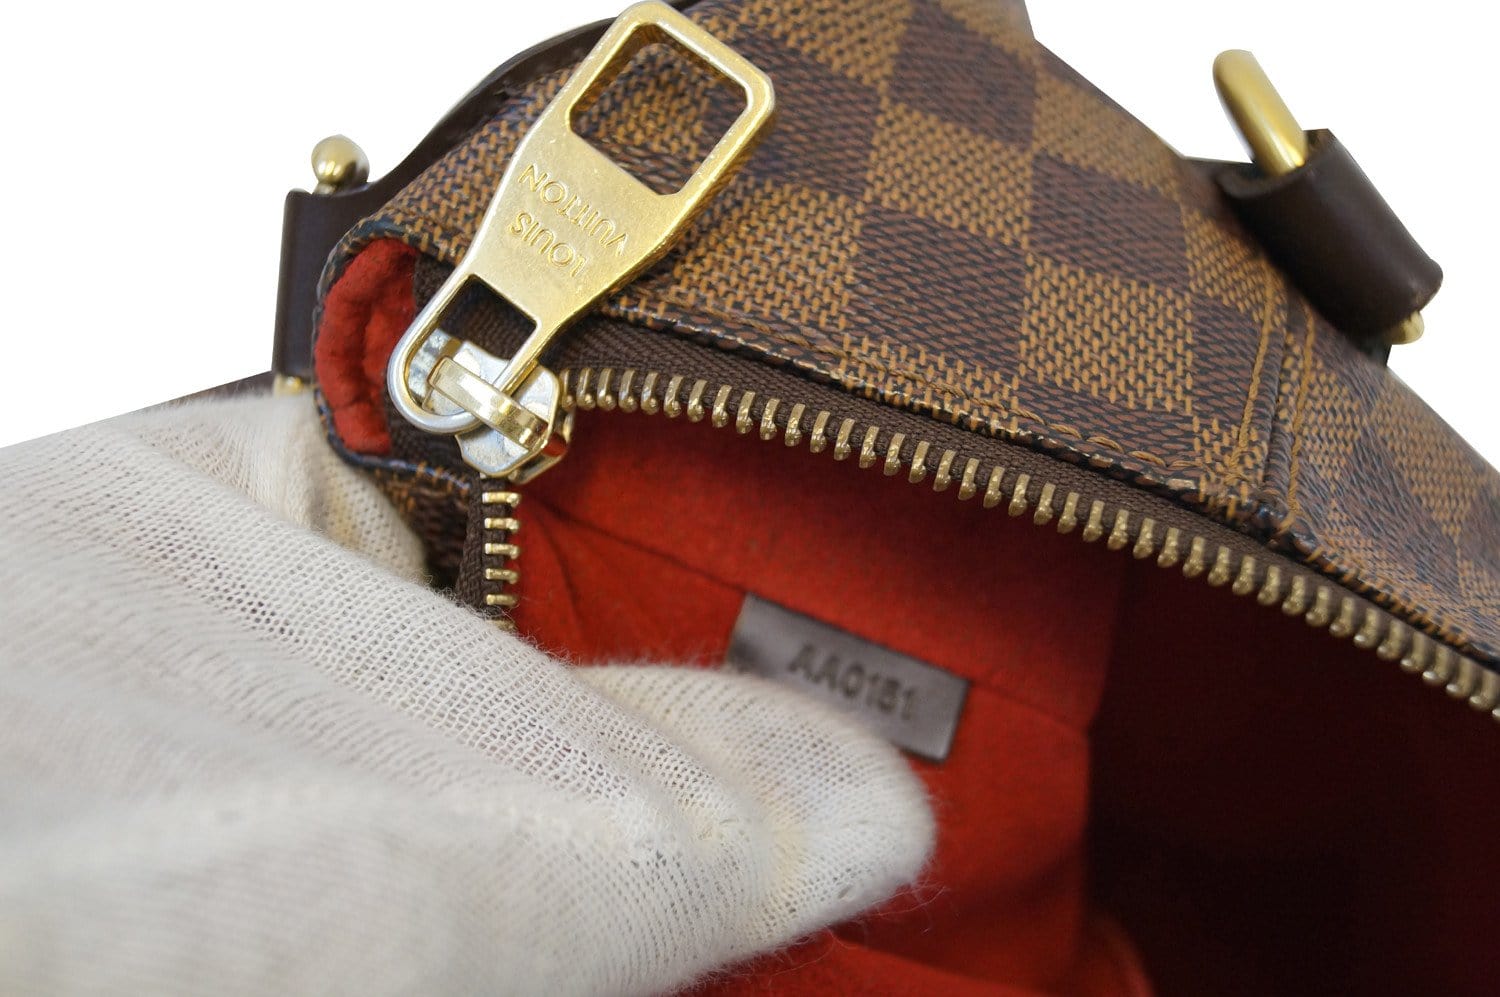 Shopbop Archive Louis Vuitton Evora MM Bag, Damier Ebene